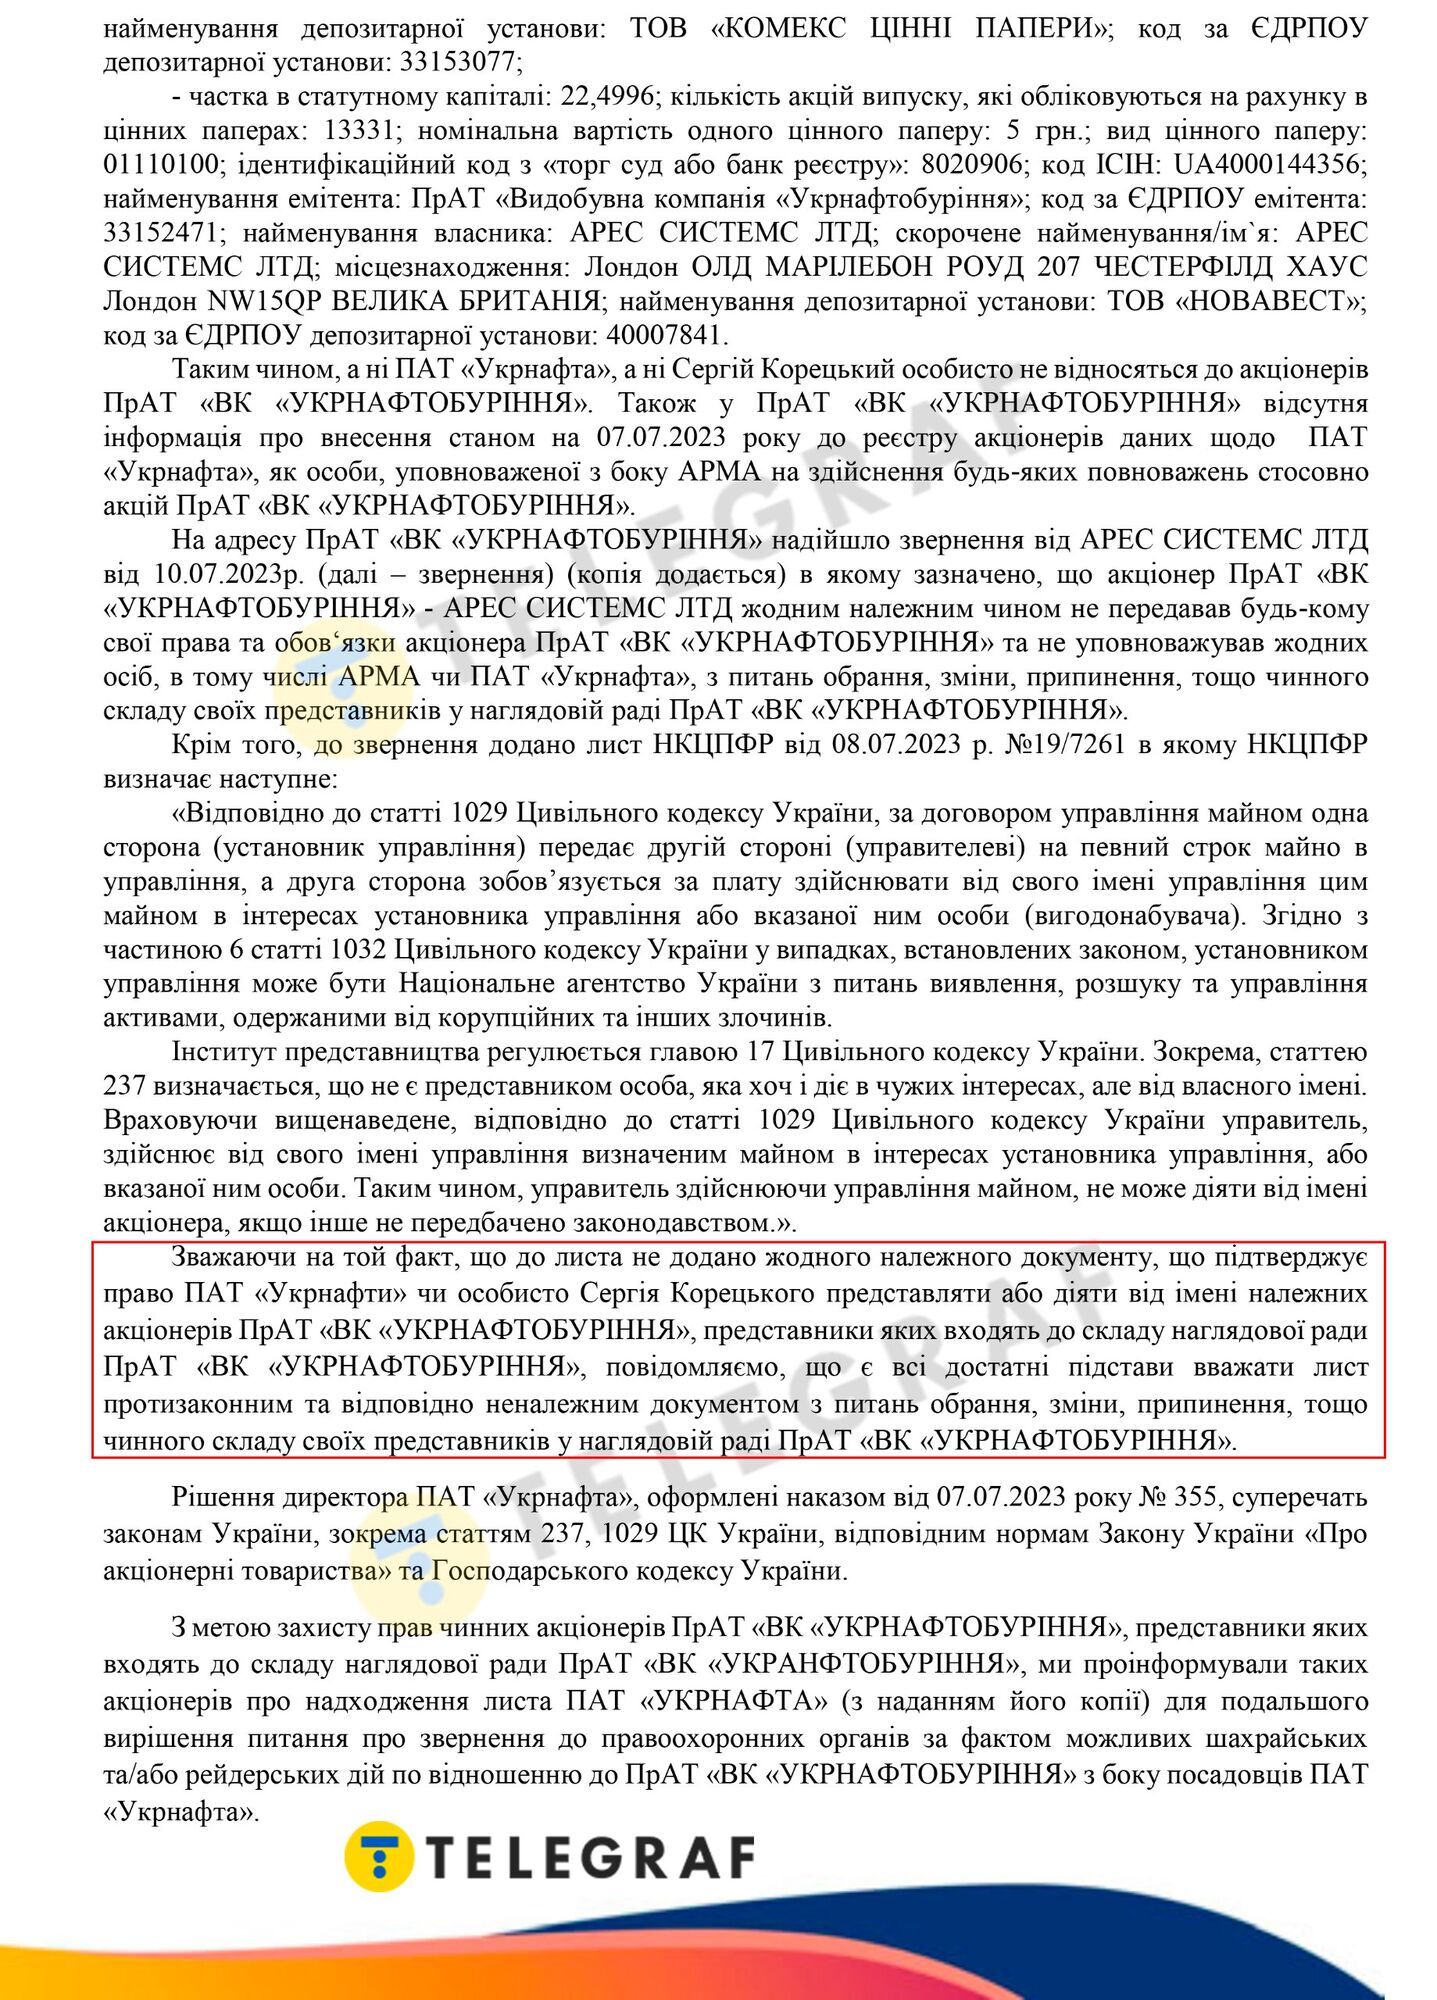 "Укрнафтобуріння" звинуватила голову "Укрнафти" Корецького в грубому порушенні закону